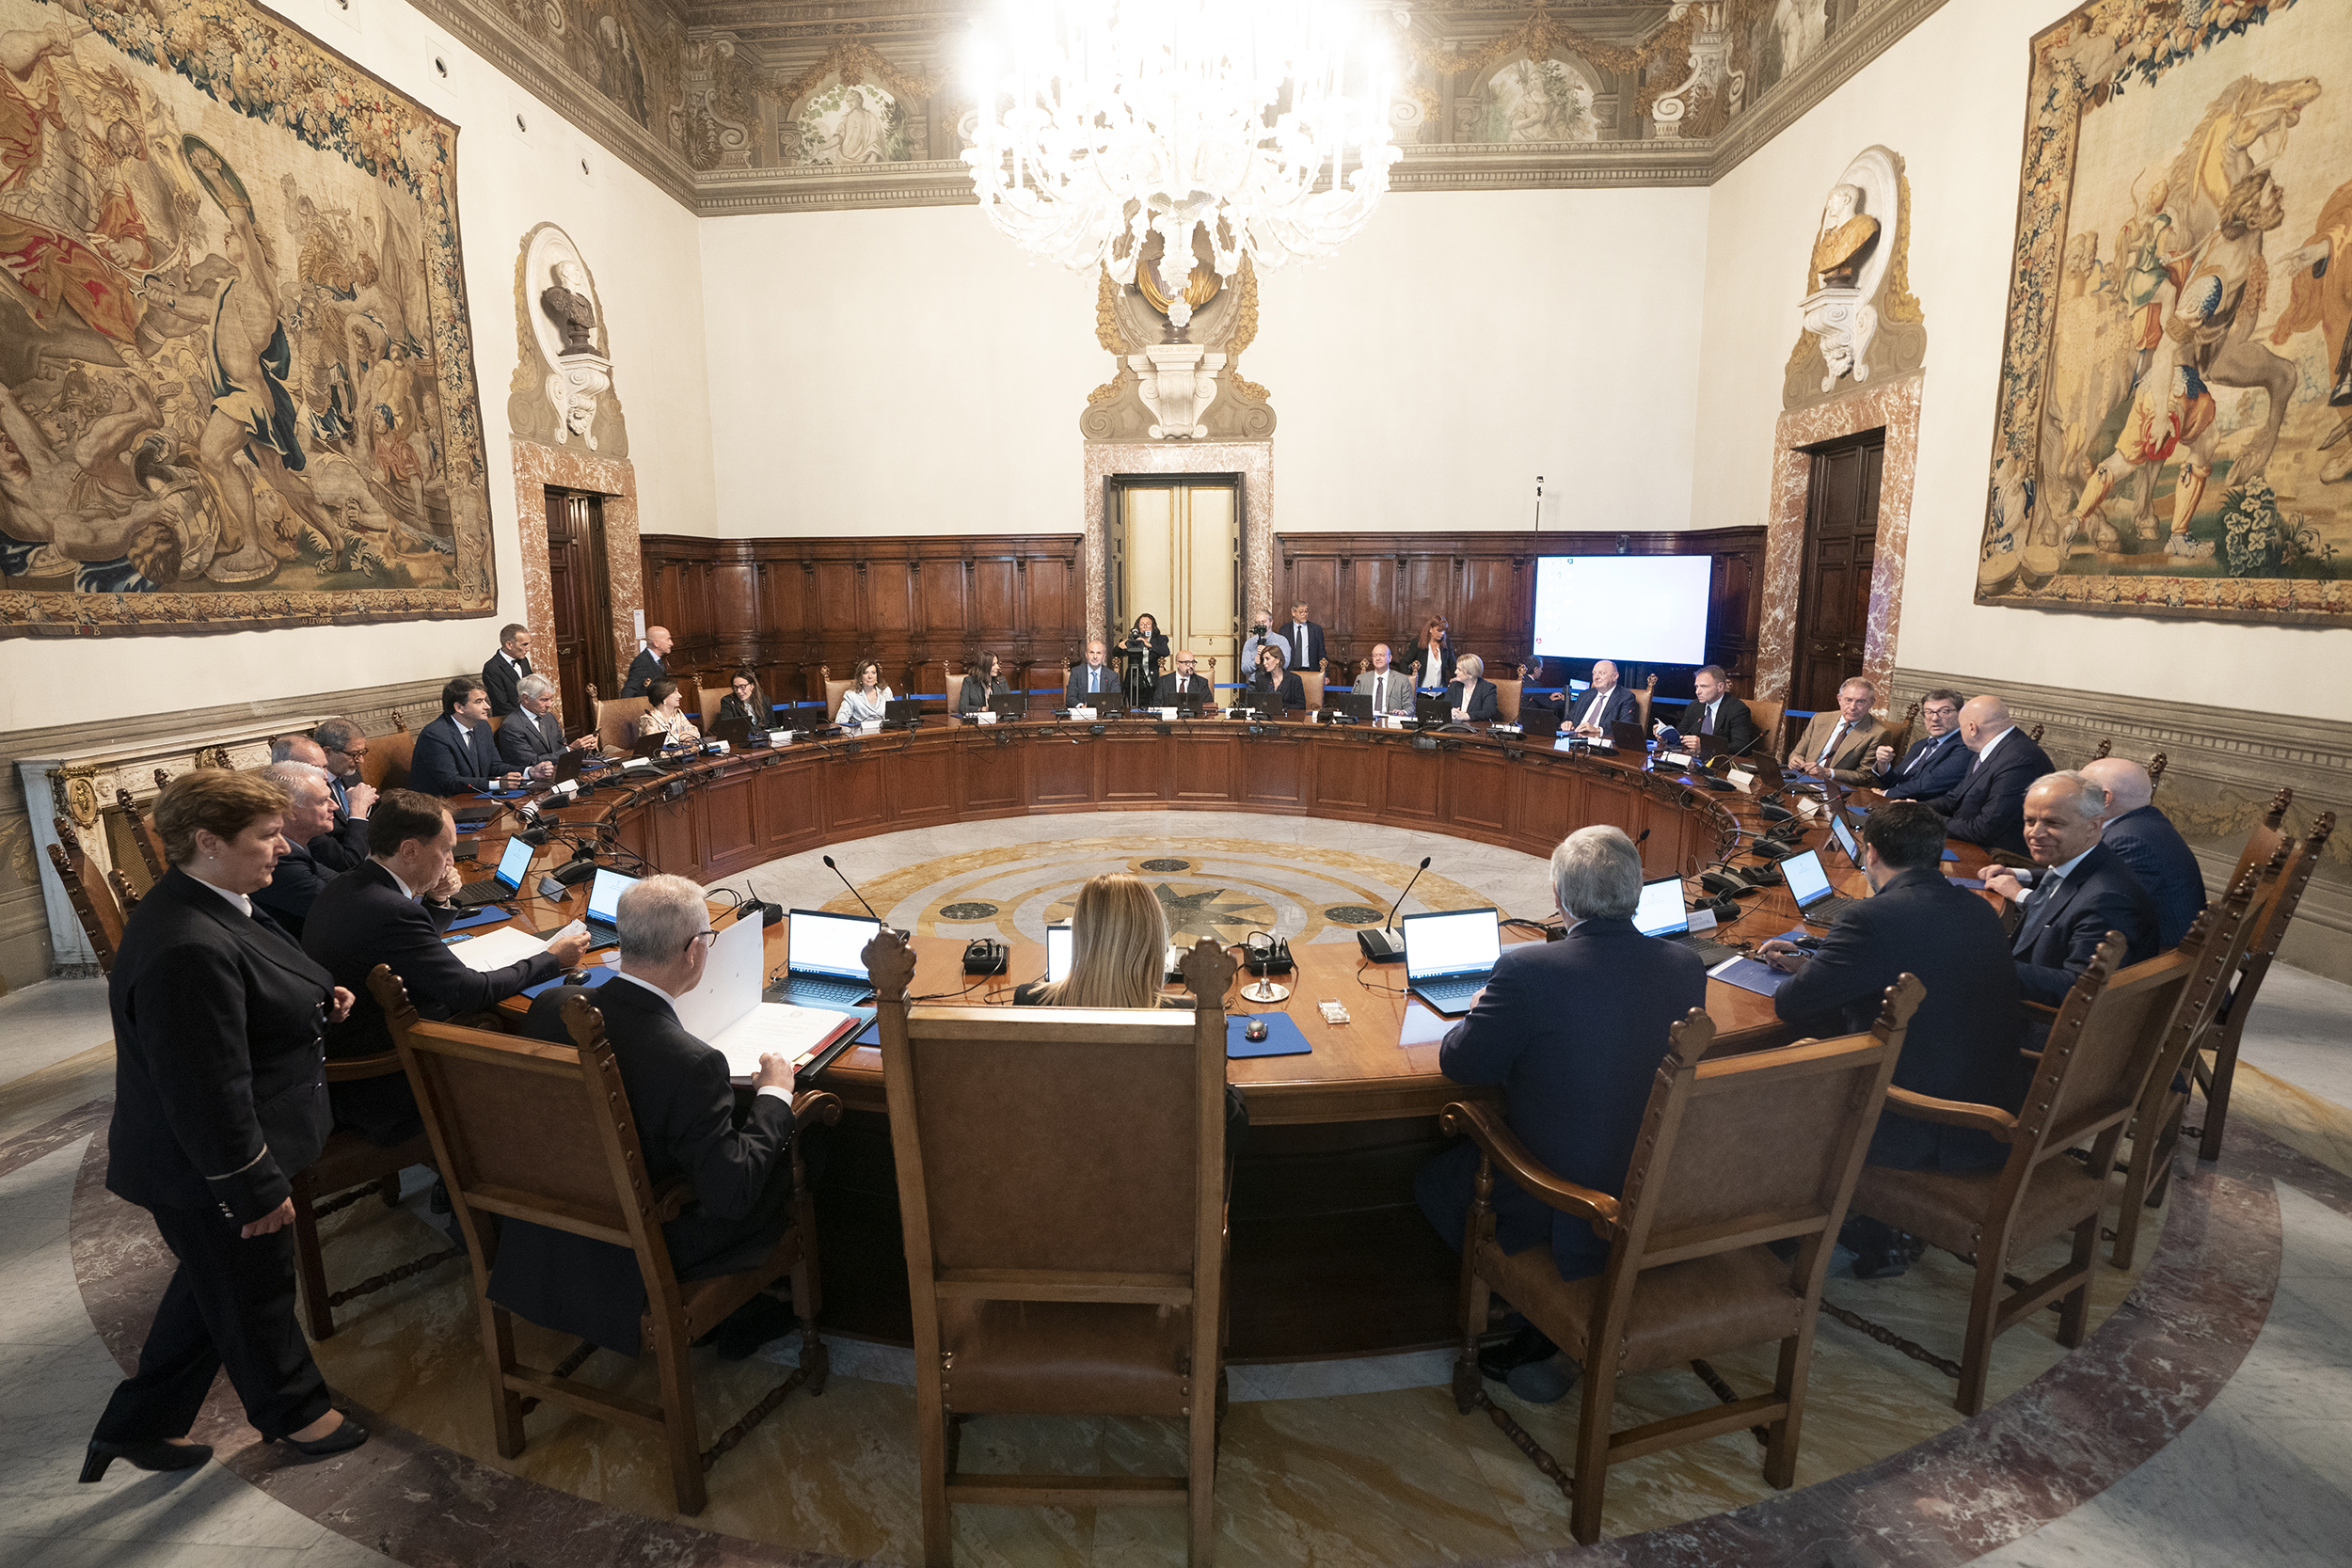 tavola rotonda con consiglio ministri